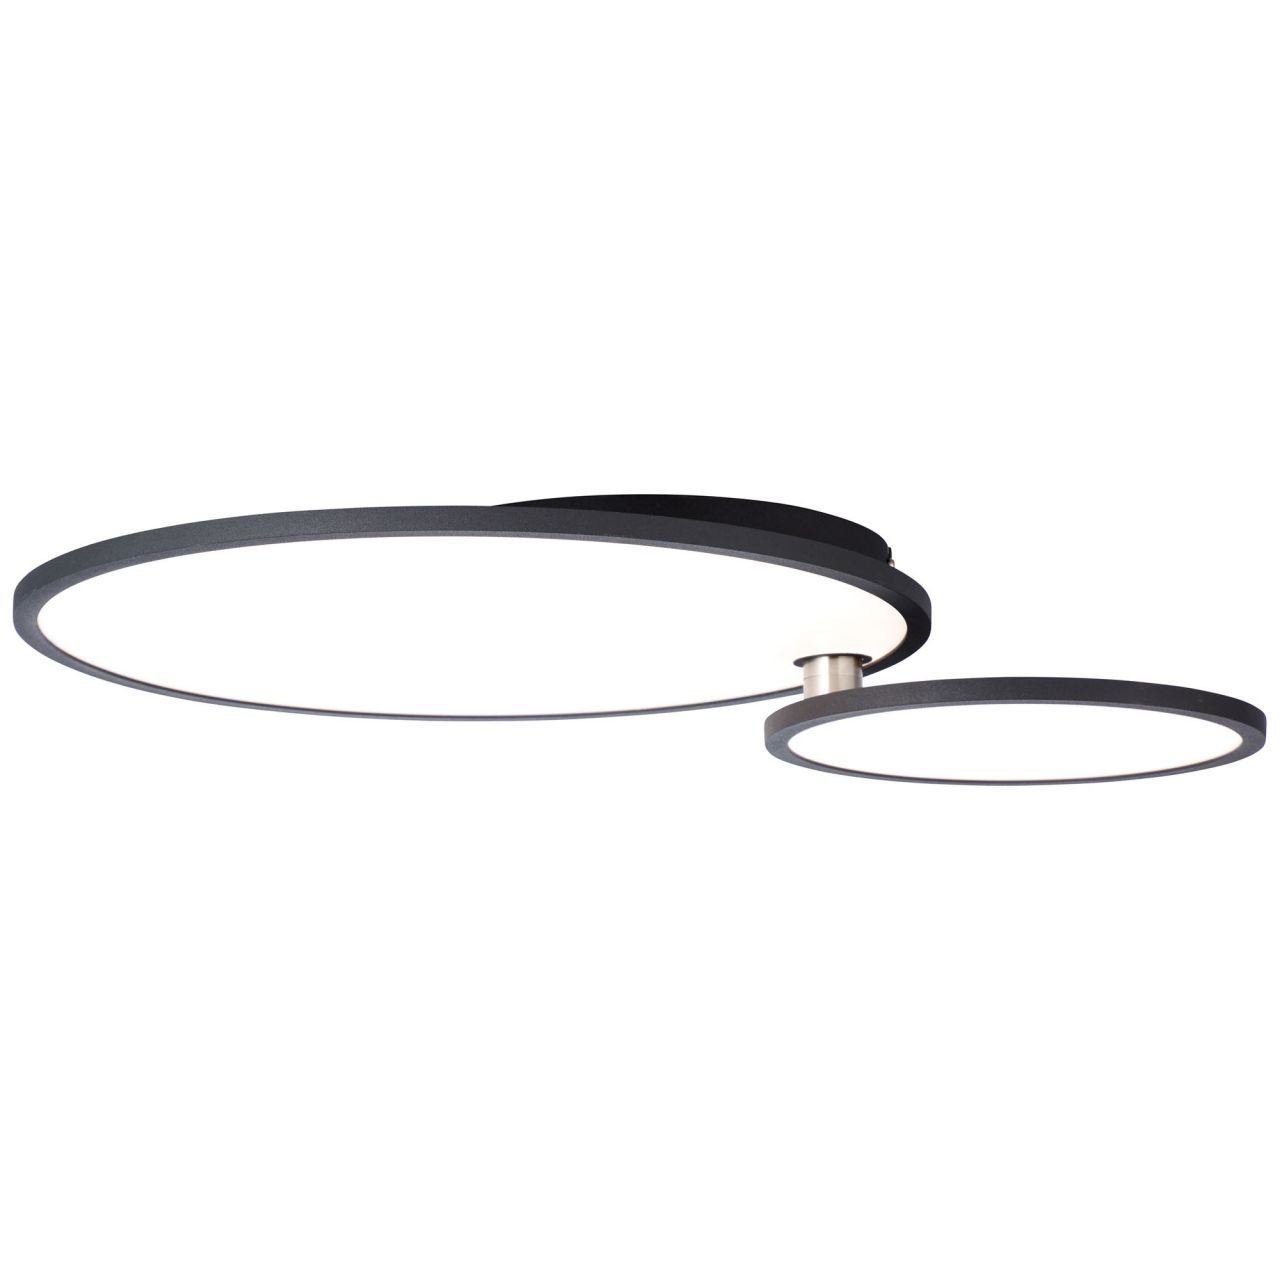 Lampe Bility 3000K, Brilliant easyDim Deckenaufbau-Paneel 1x schwarz/weiß Bility, 61x45cm LED Aufbauleuchte